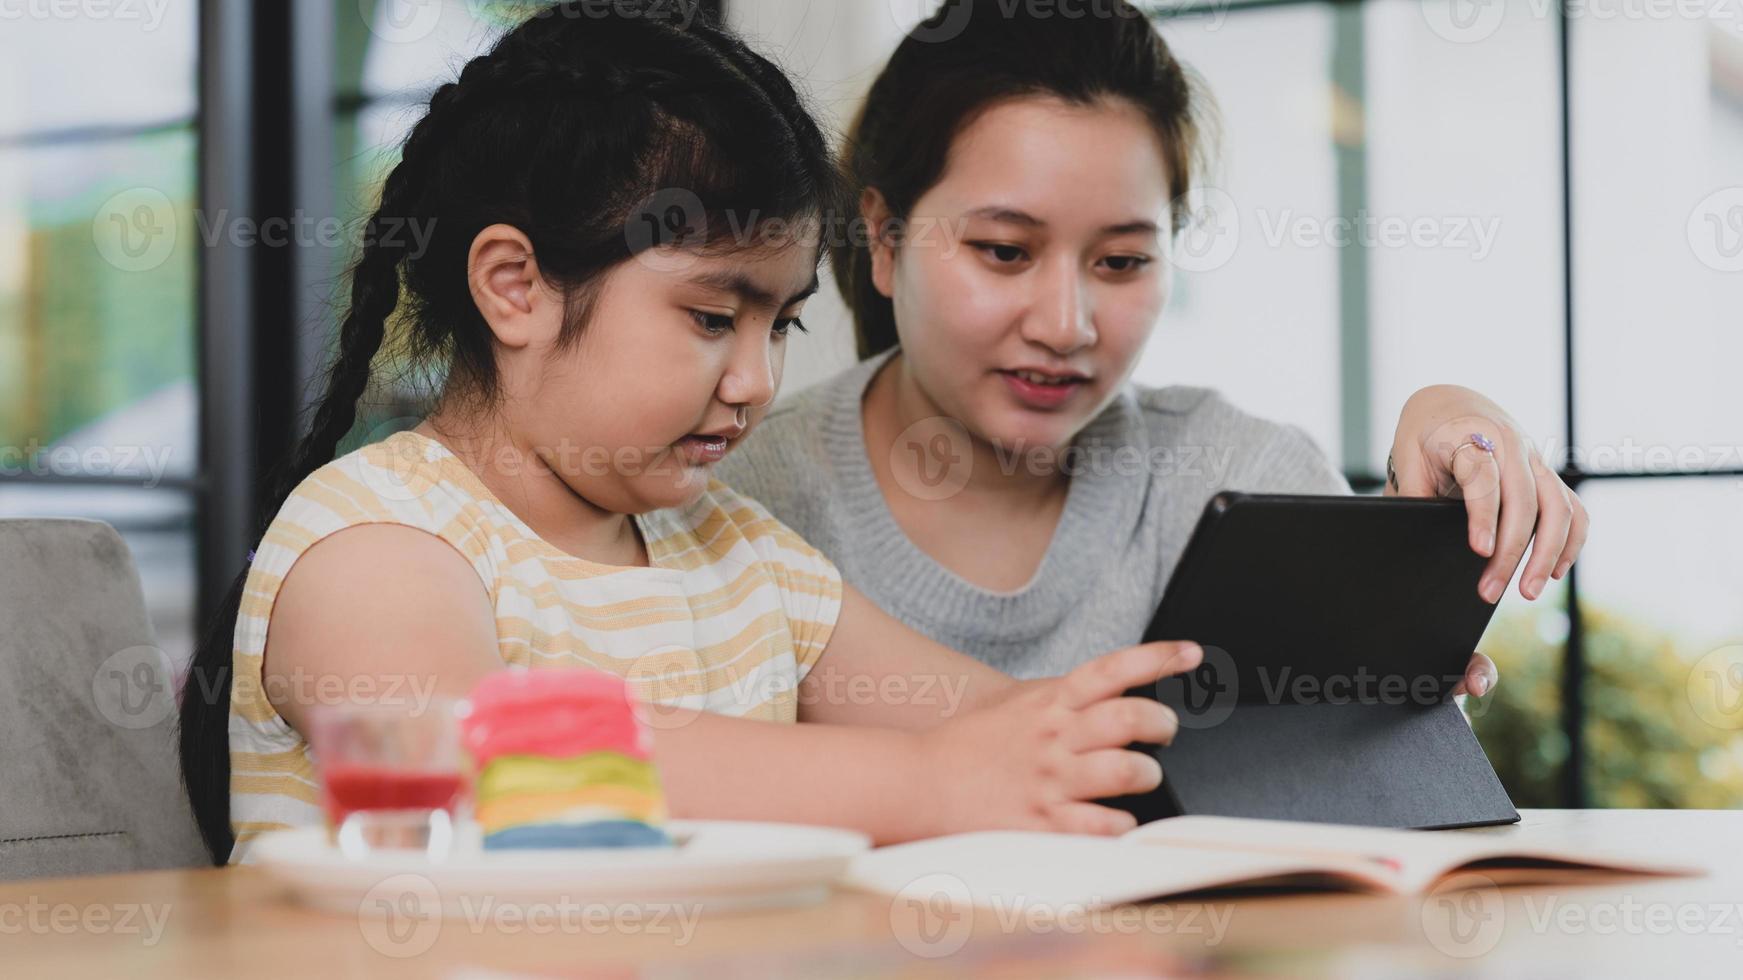 jeunes frères et sœurs asiatiques regardant une tablette, deux filles asiatiques utilisant une tablette. photo